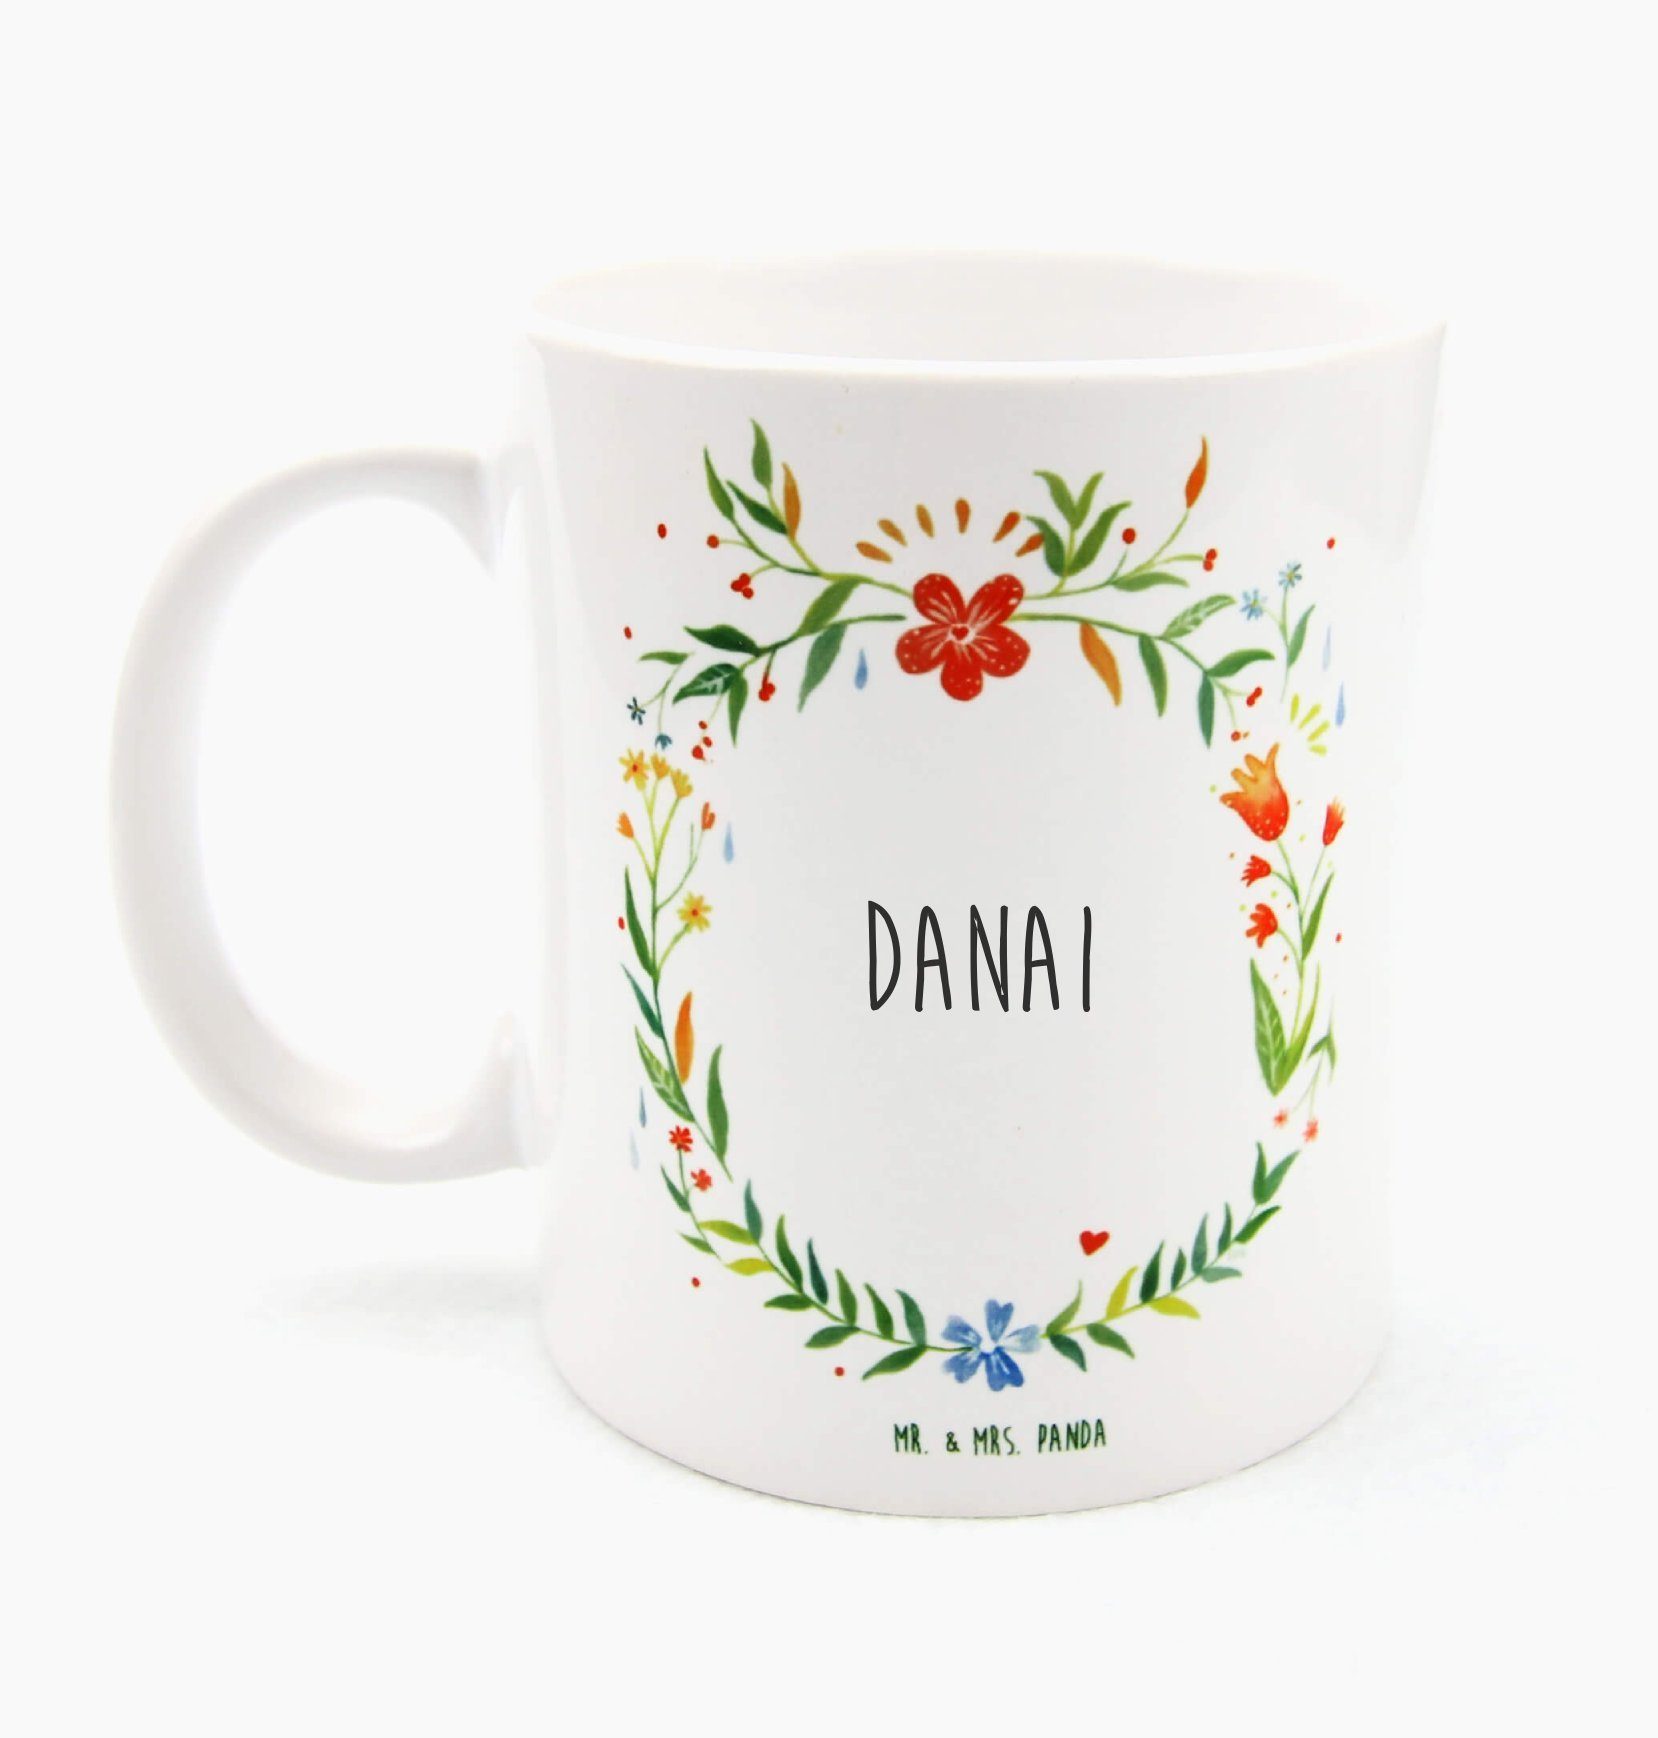 Mr. & Mrs. Panda Tasse Danai - Geschenk, Kaffeetasse, Kaffeebecher, Geschenk Tasse, Becher, Keramik